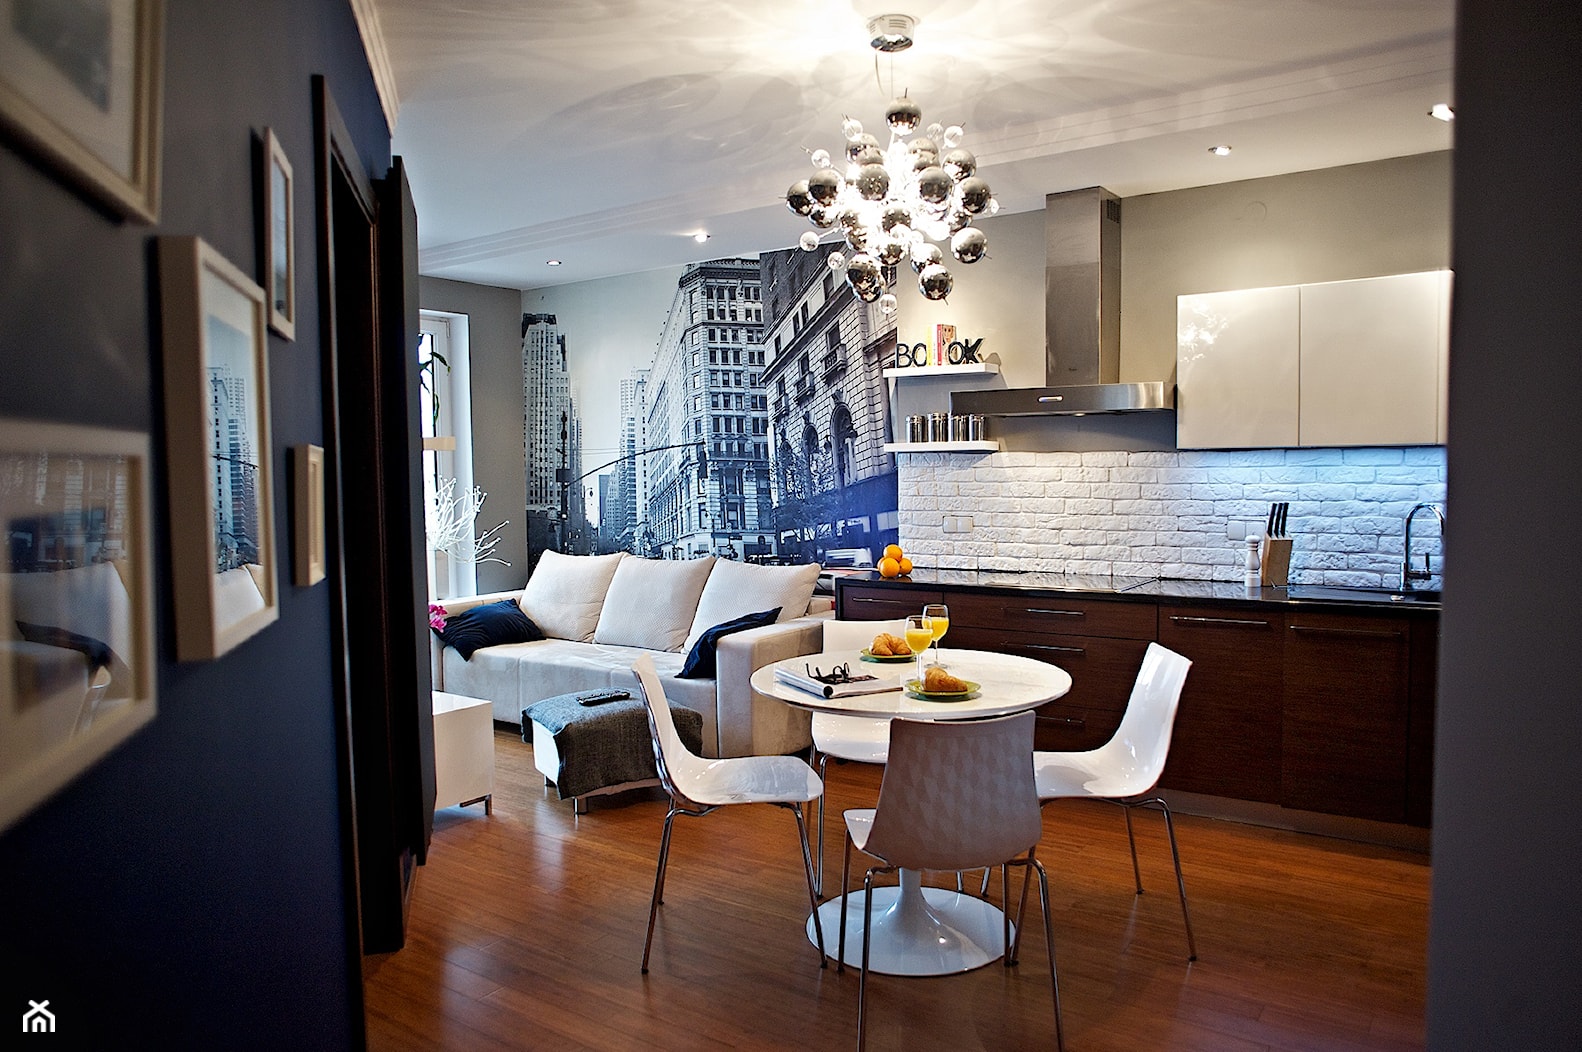 mieszkanie rodzeństwa 76m2 - Salon, styl nowoczesny - zdjęcie od rooMore - Homebook